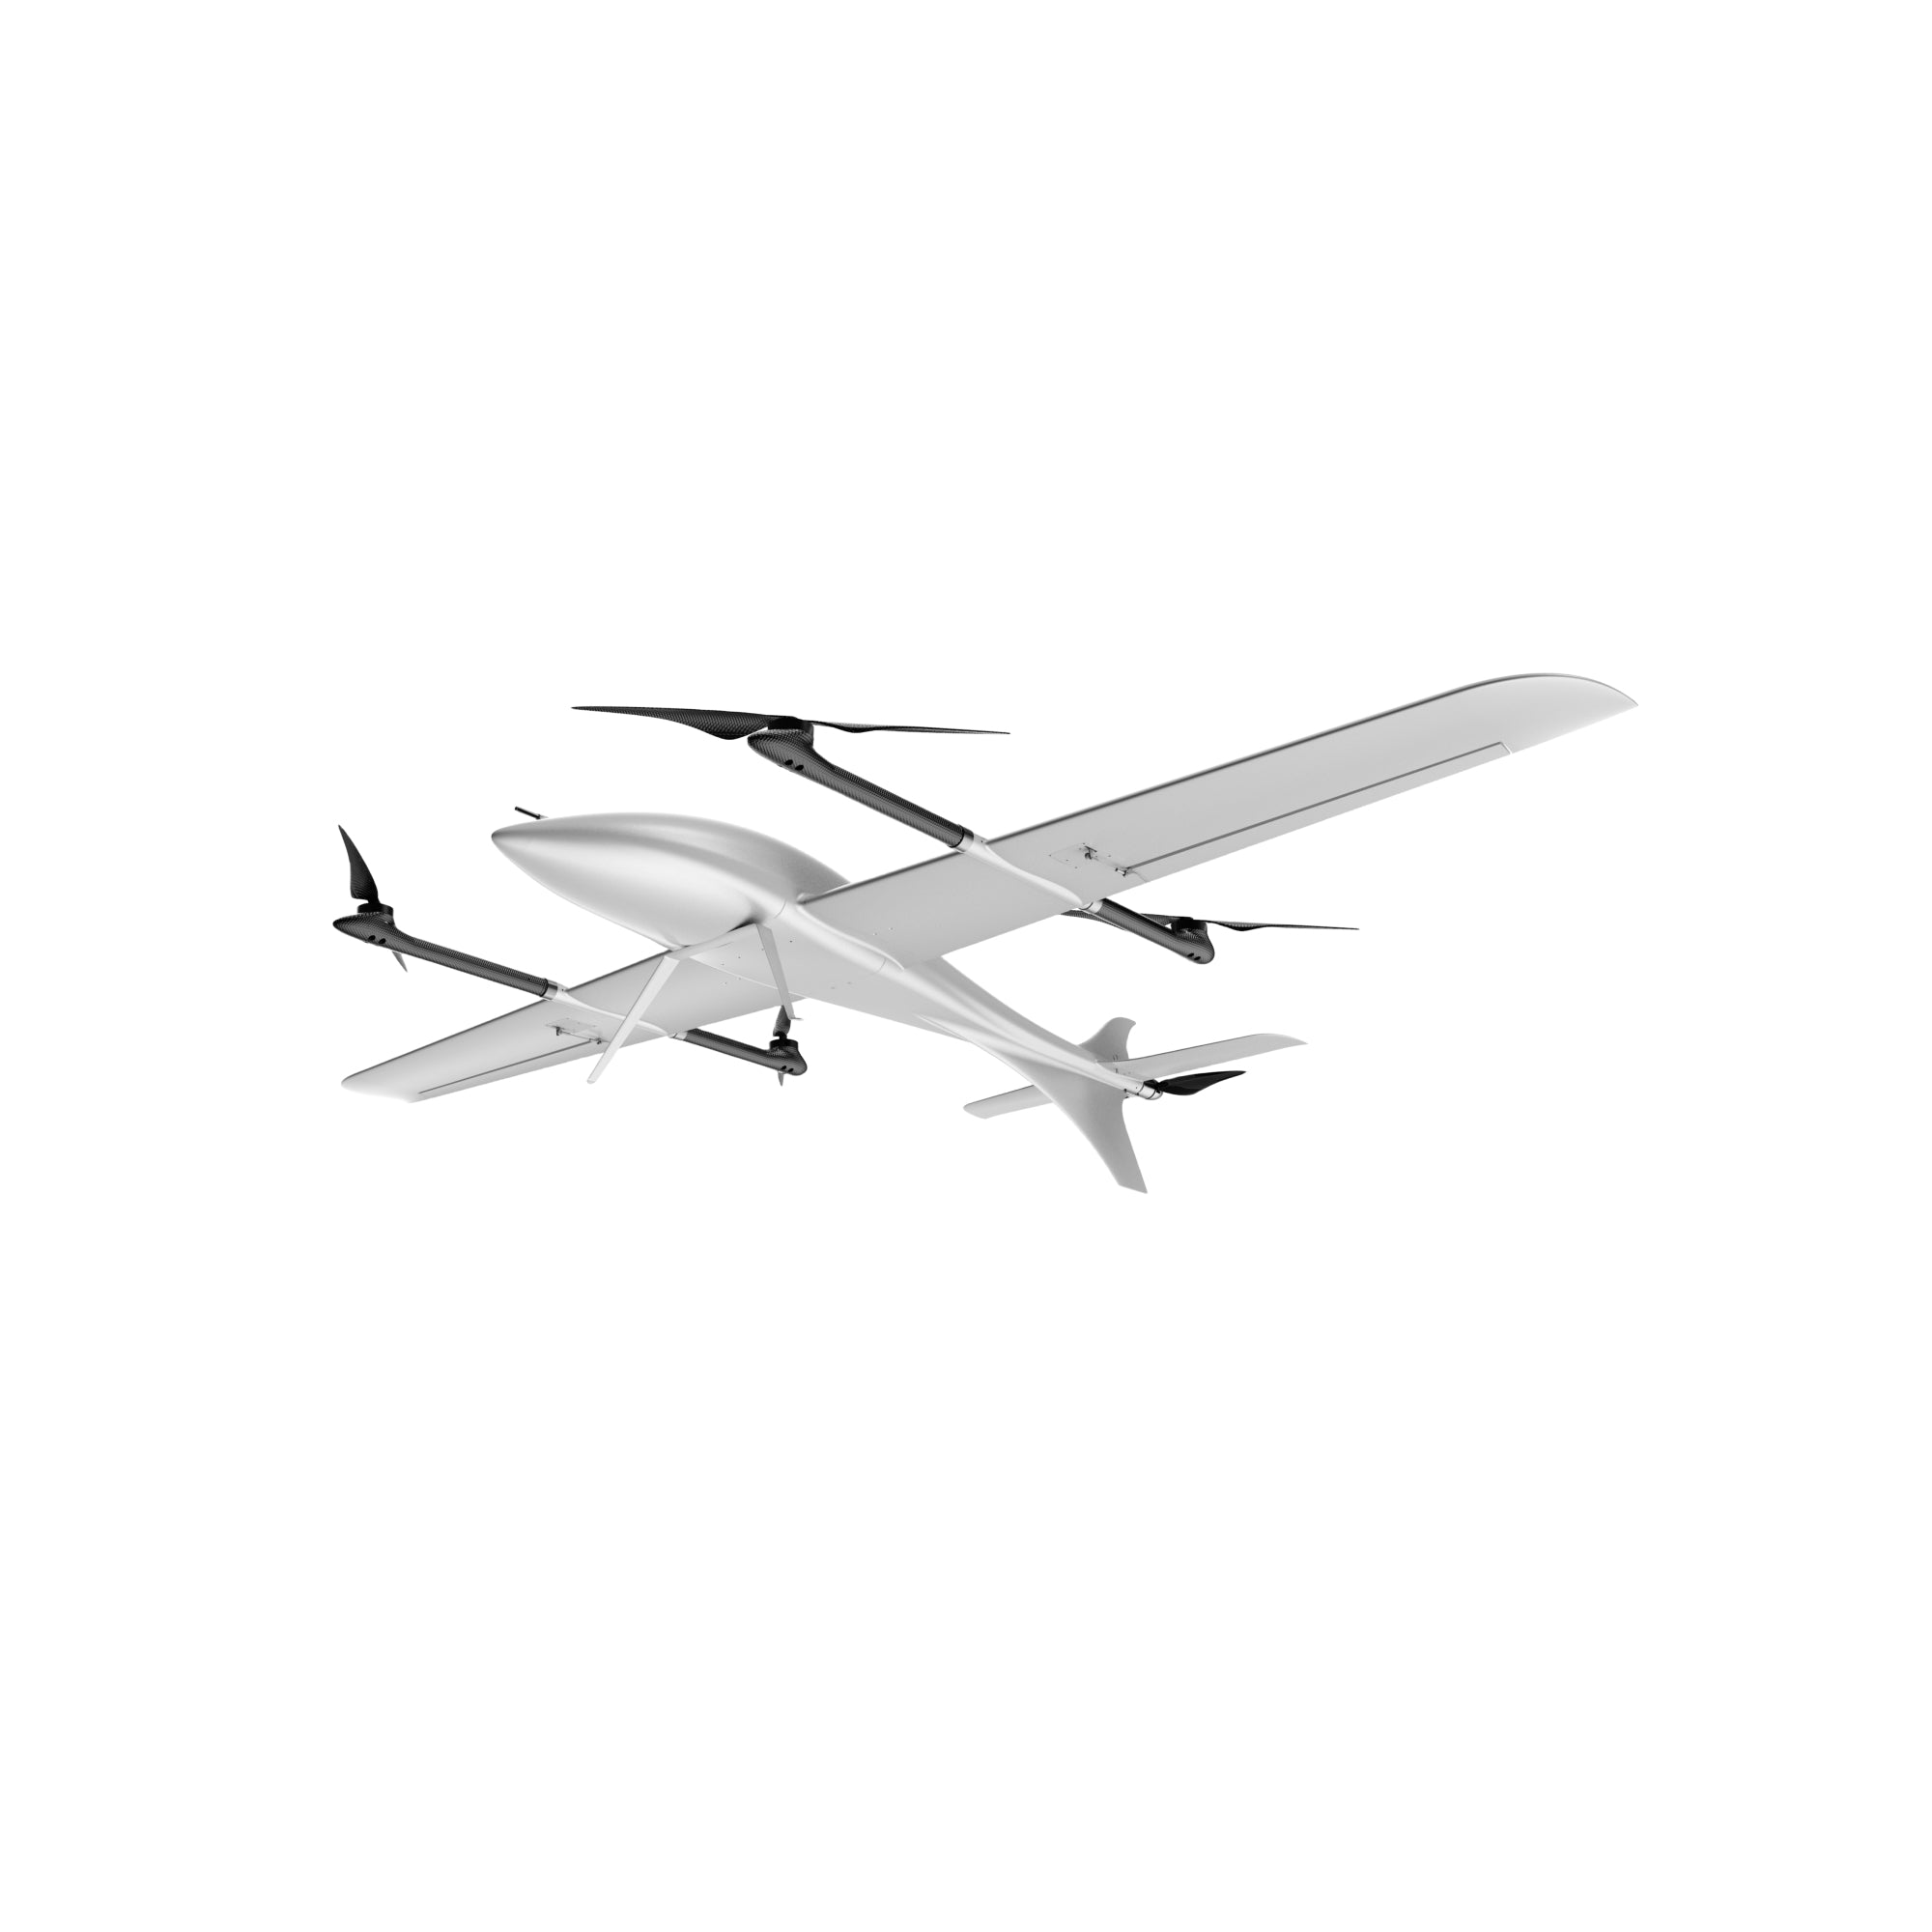 Phoenix VTOL UAV - Compacted UAV 1 KG Mission Payload 3 Hours Endurances - Unmanned RC